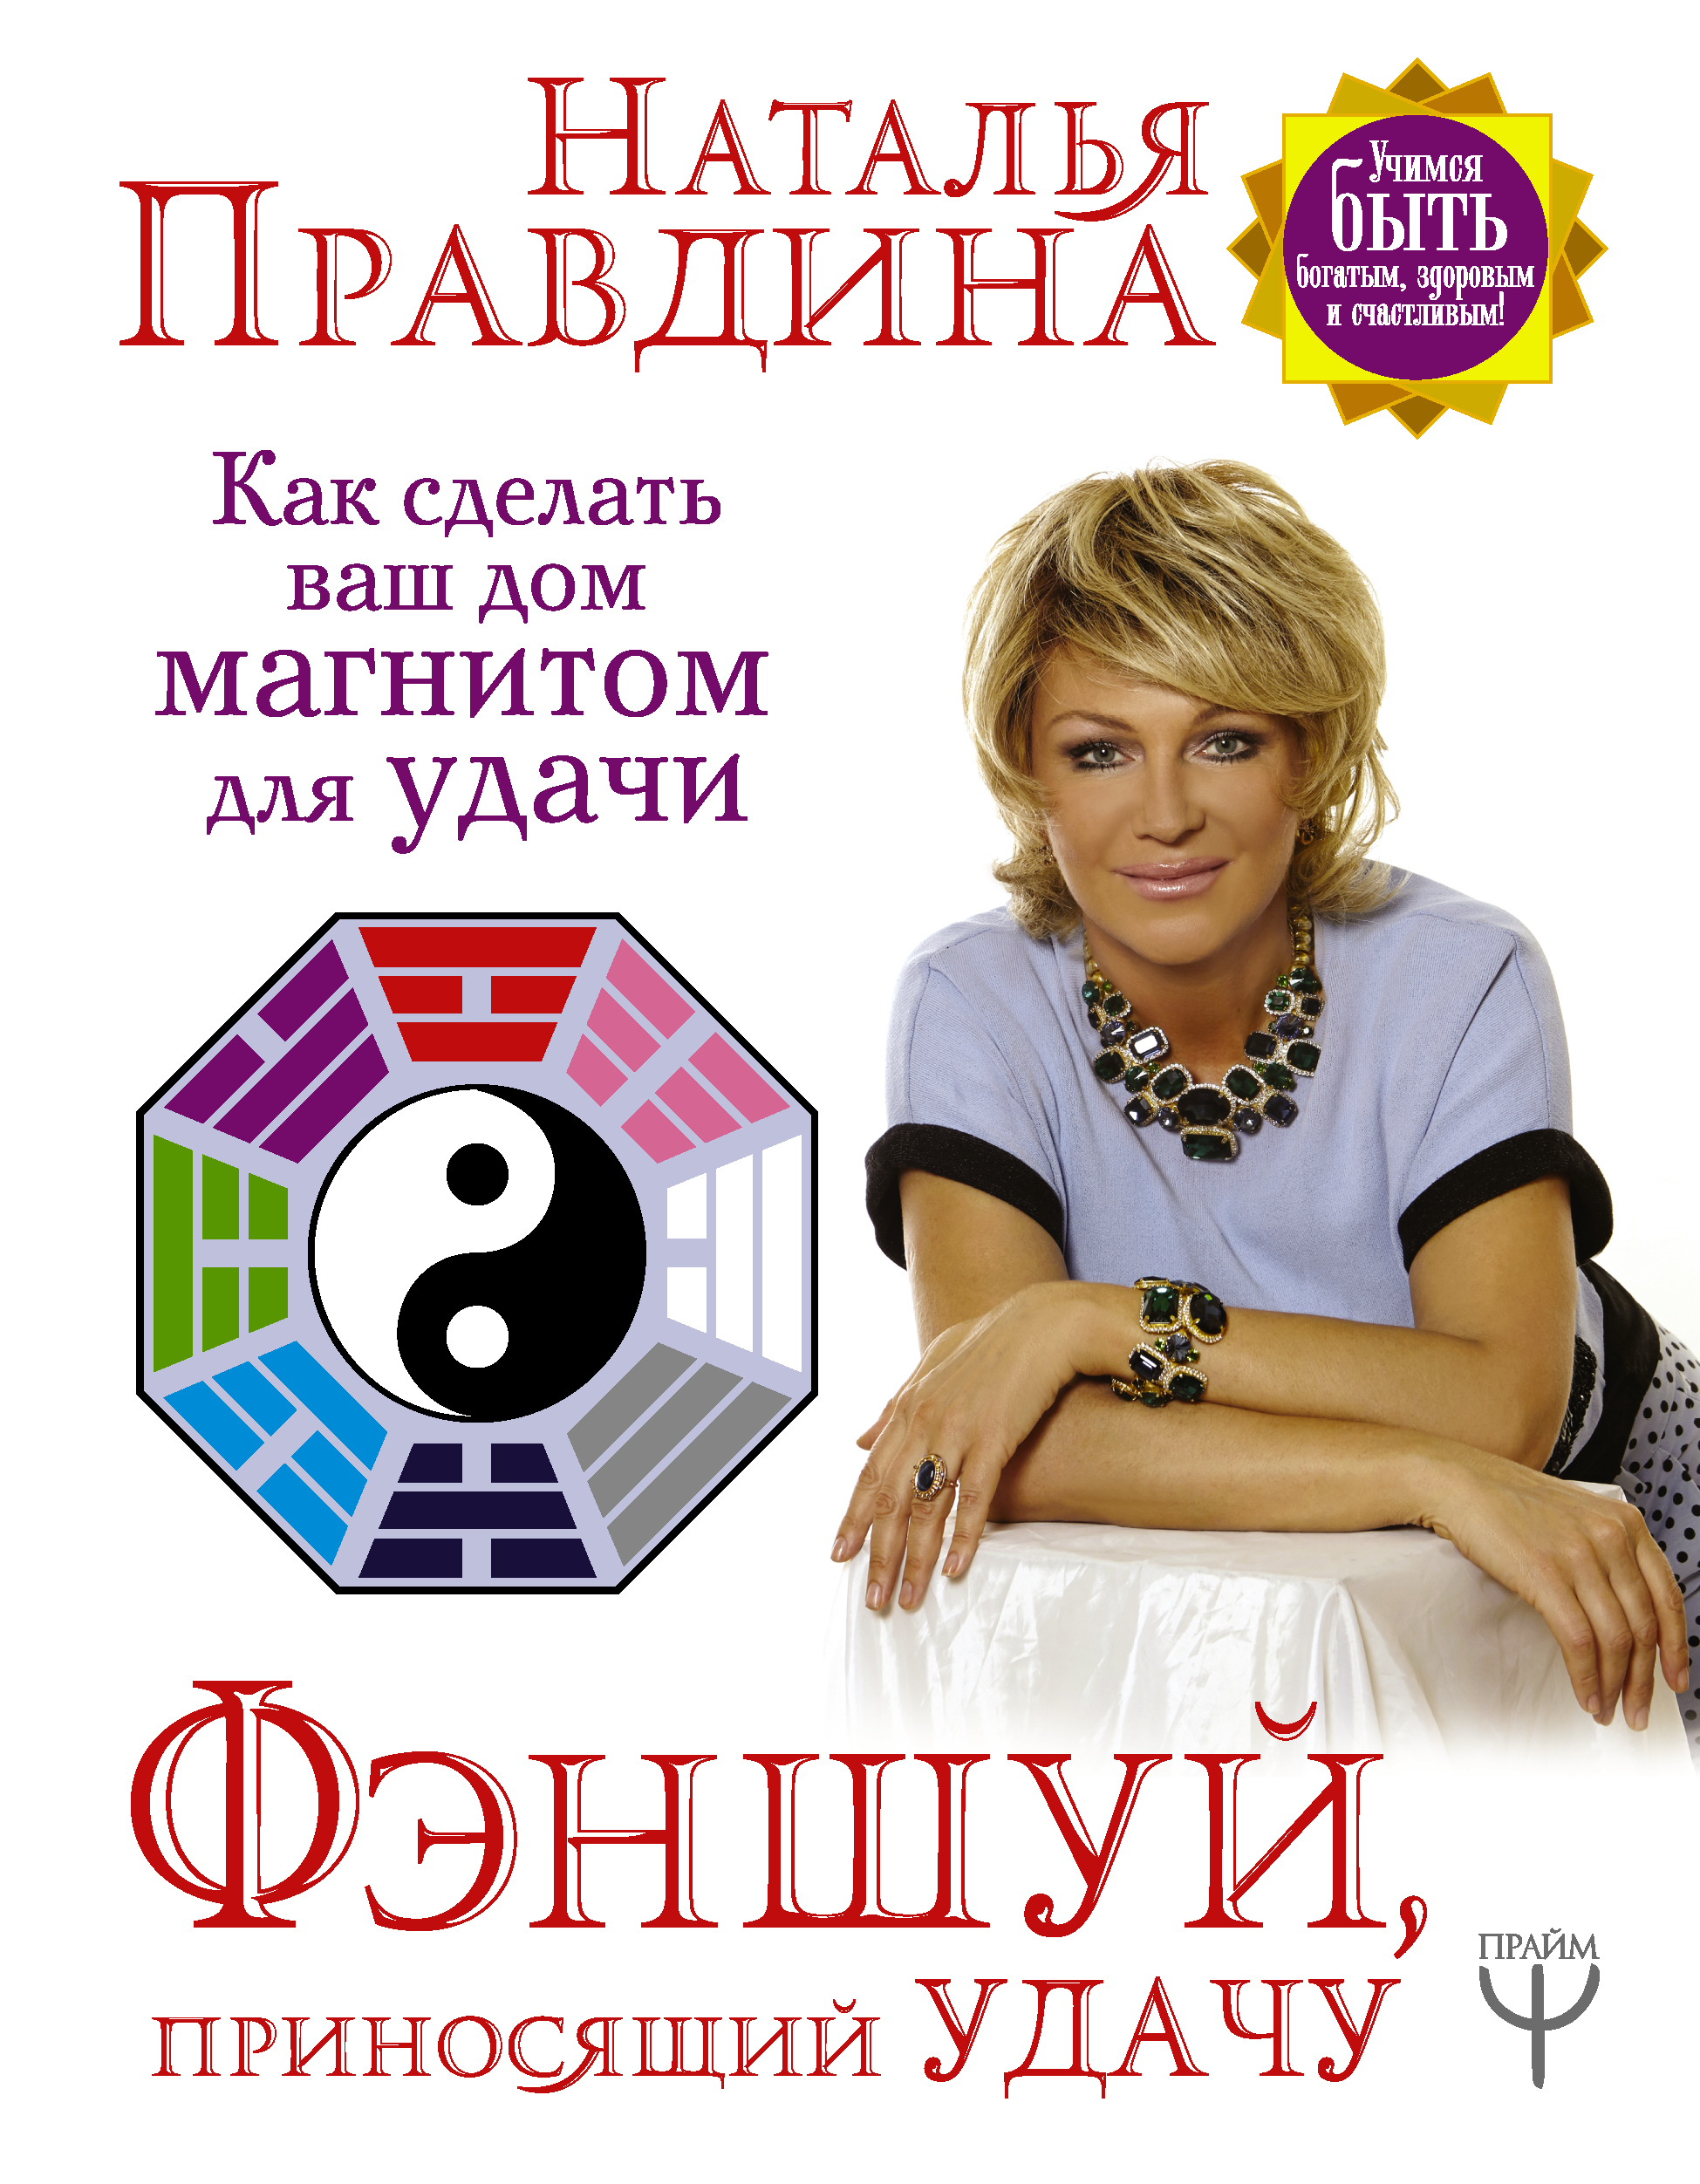 Правдина Наталия Борисовна Фэншуй, приносящий удачу. Как сделать ваш дом магнитом для удачи - страница 0